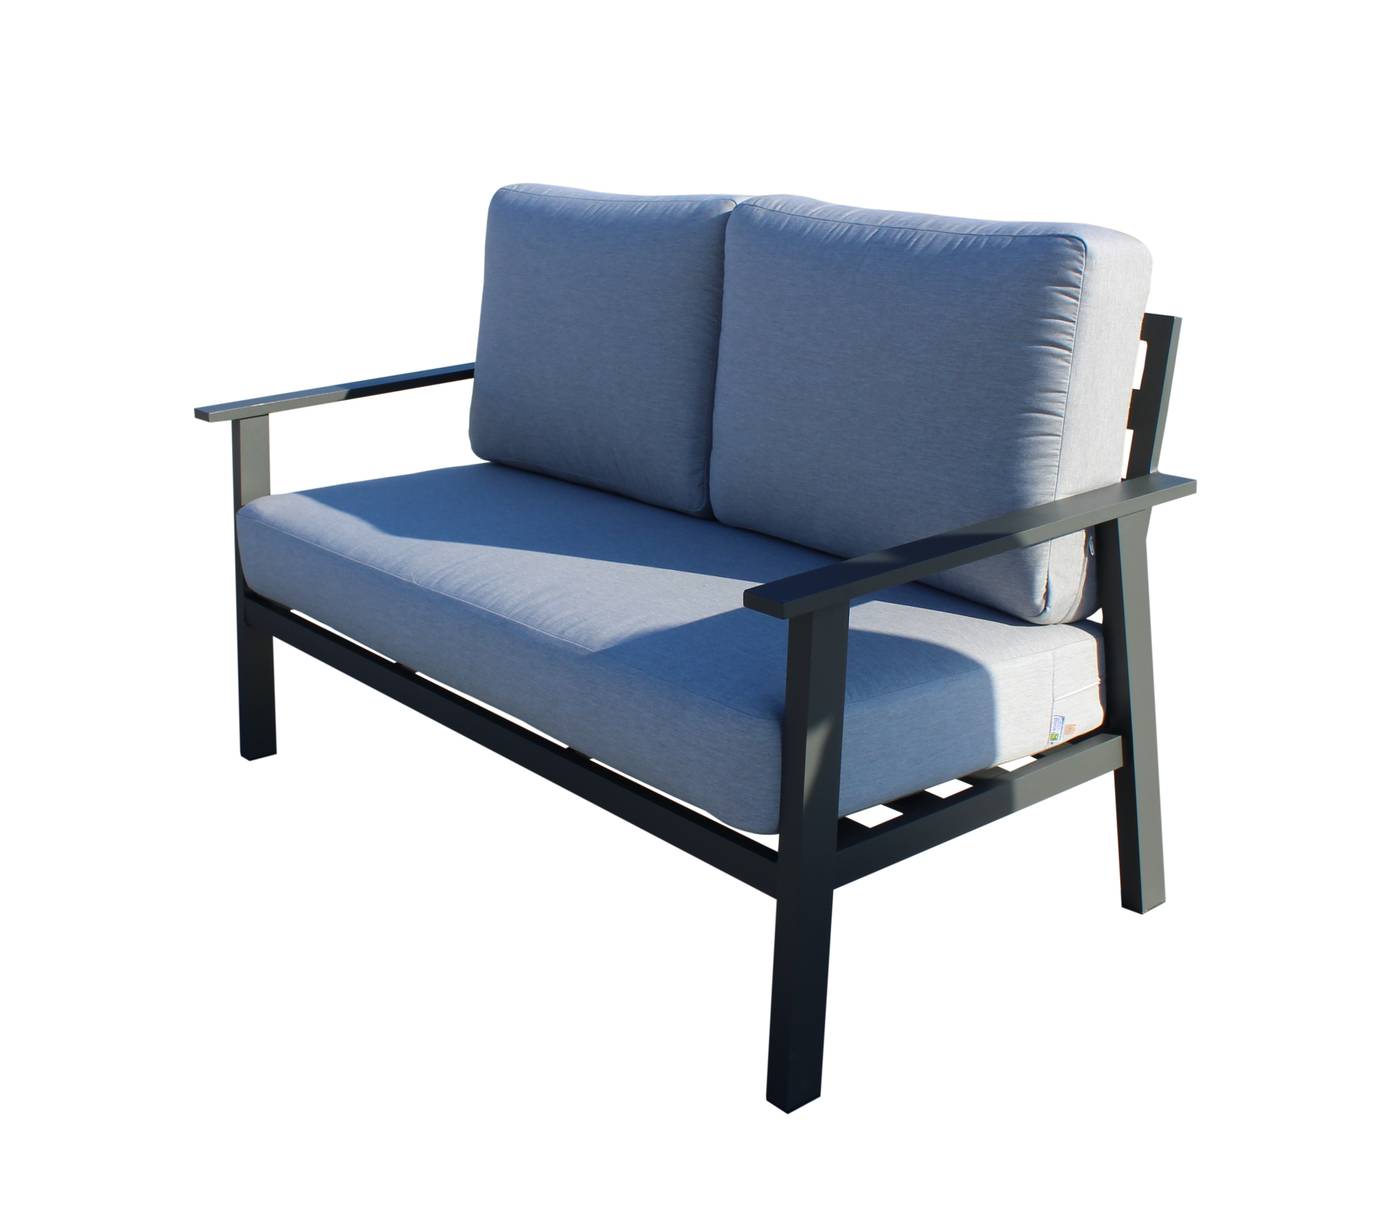 Set Aluminio Eliot-7 - Conjunto aluminio: sofá 2 plazas + 2 sillones + mesa de centro. Fabricado de aluminio en color blanco, antracita, champagne, plata o marrón.